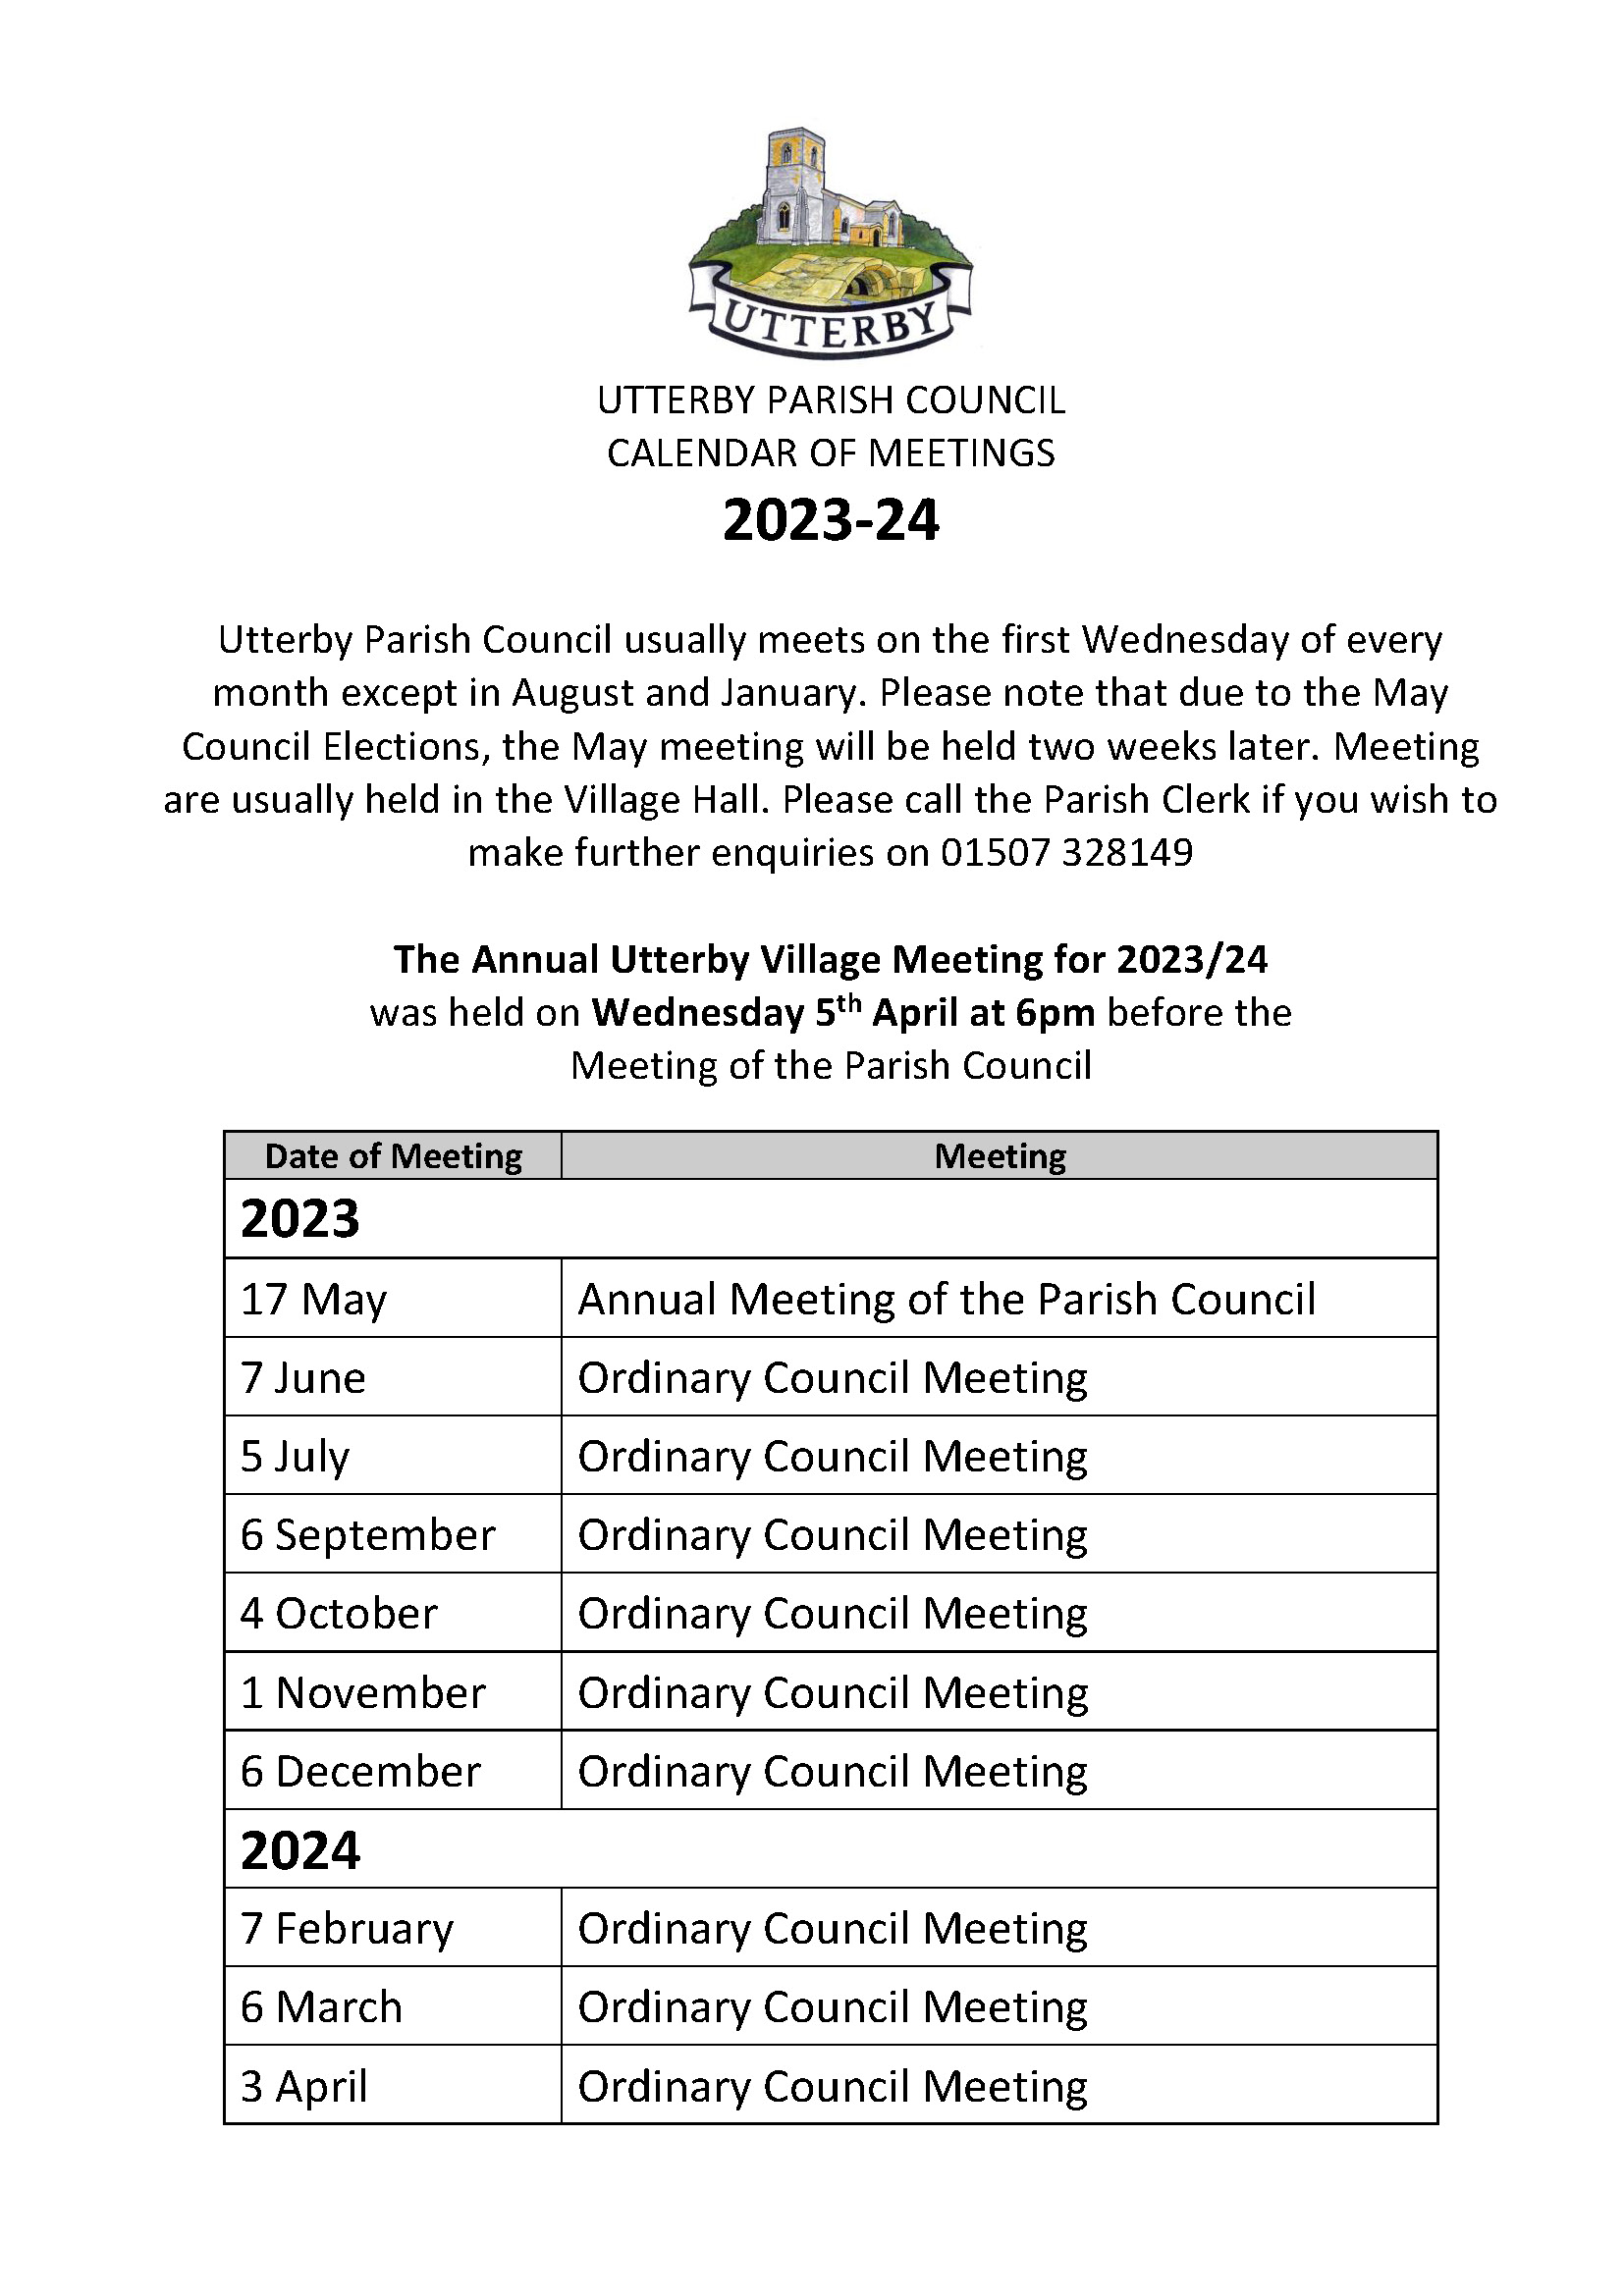 Calendar of meetings 2023 24